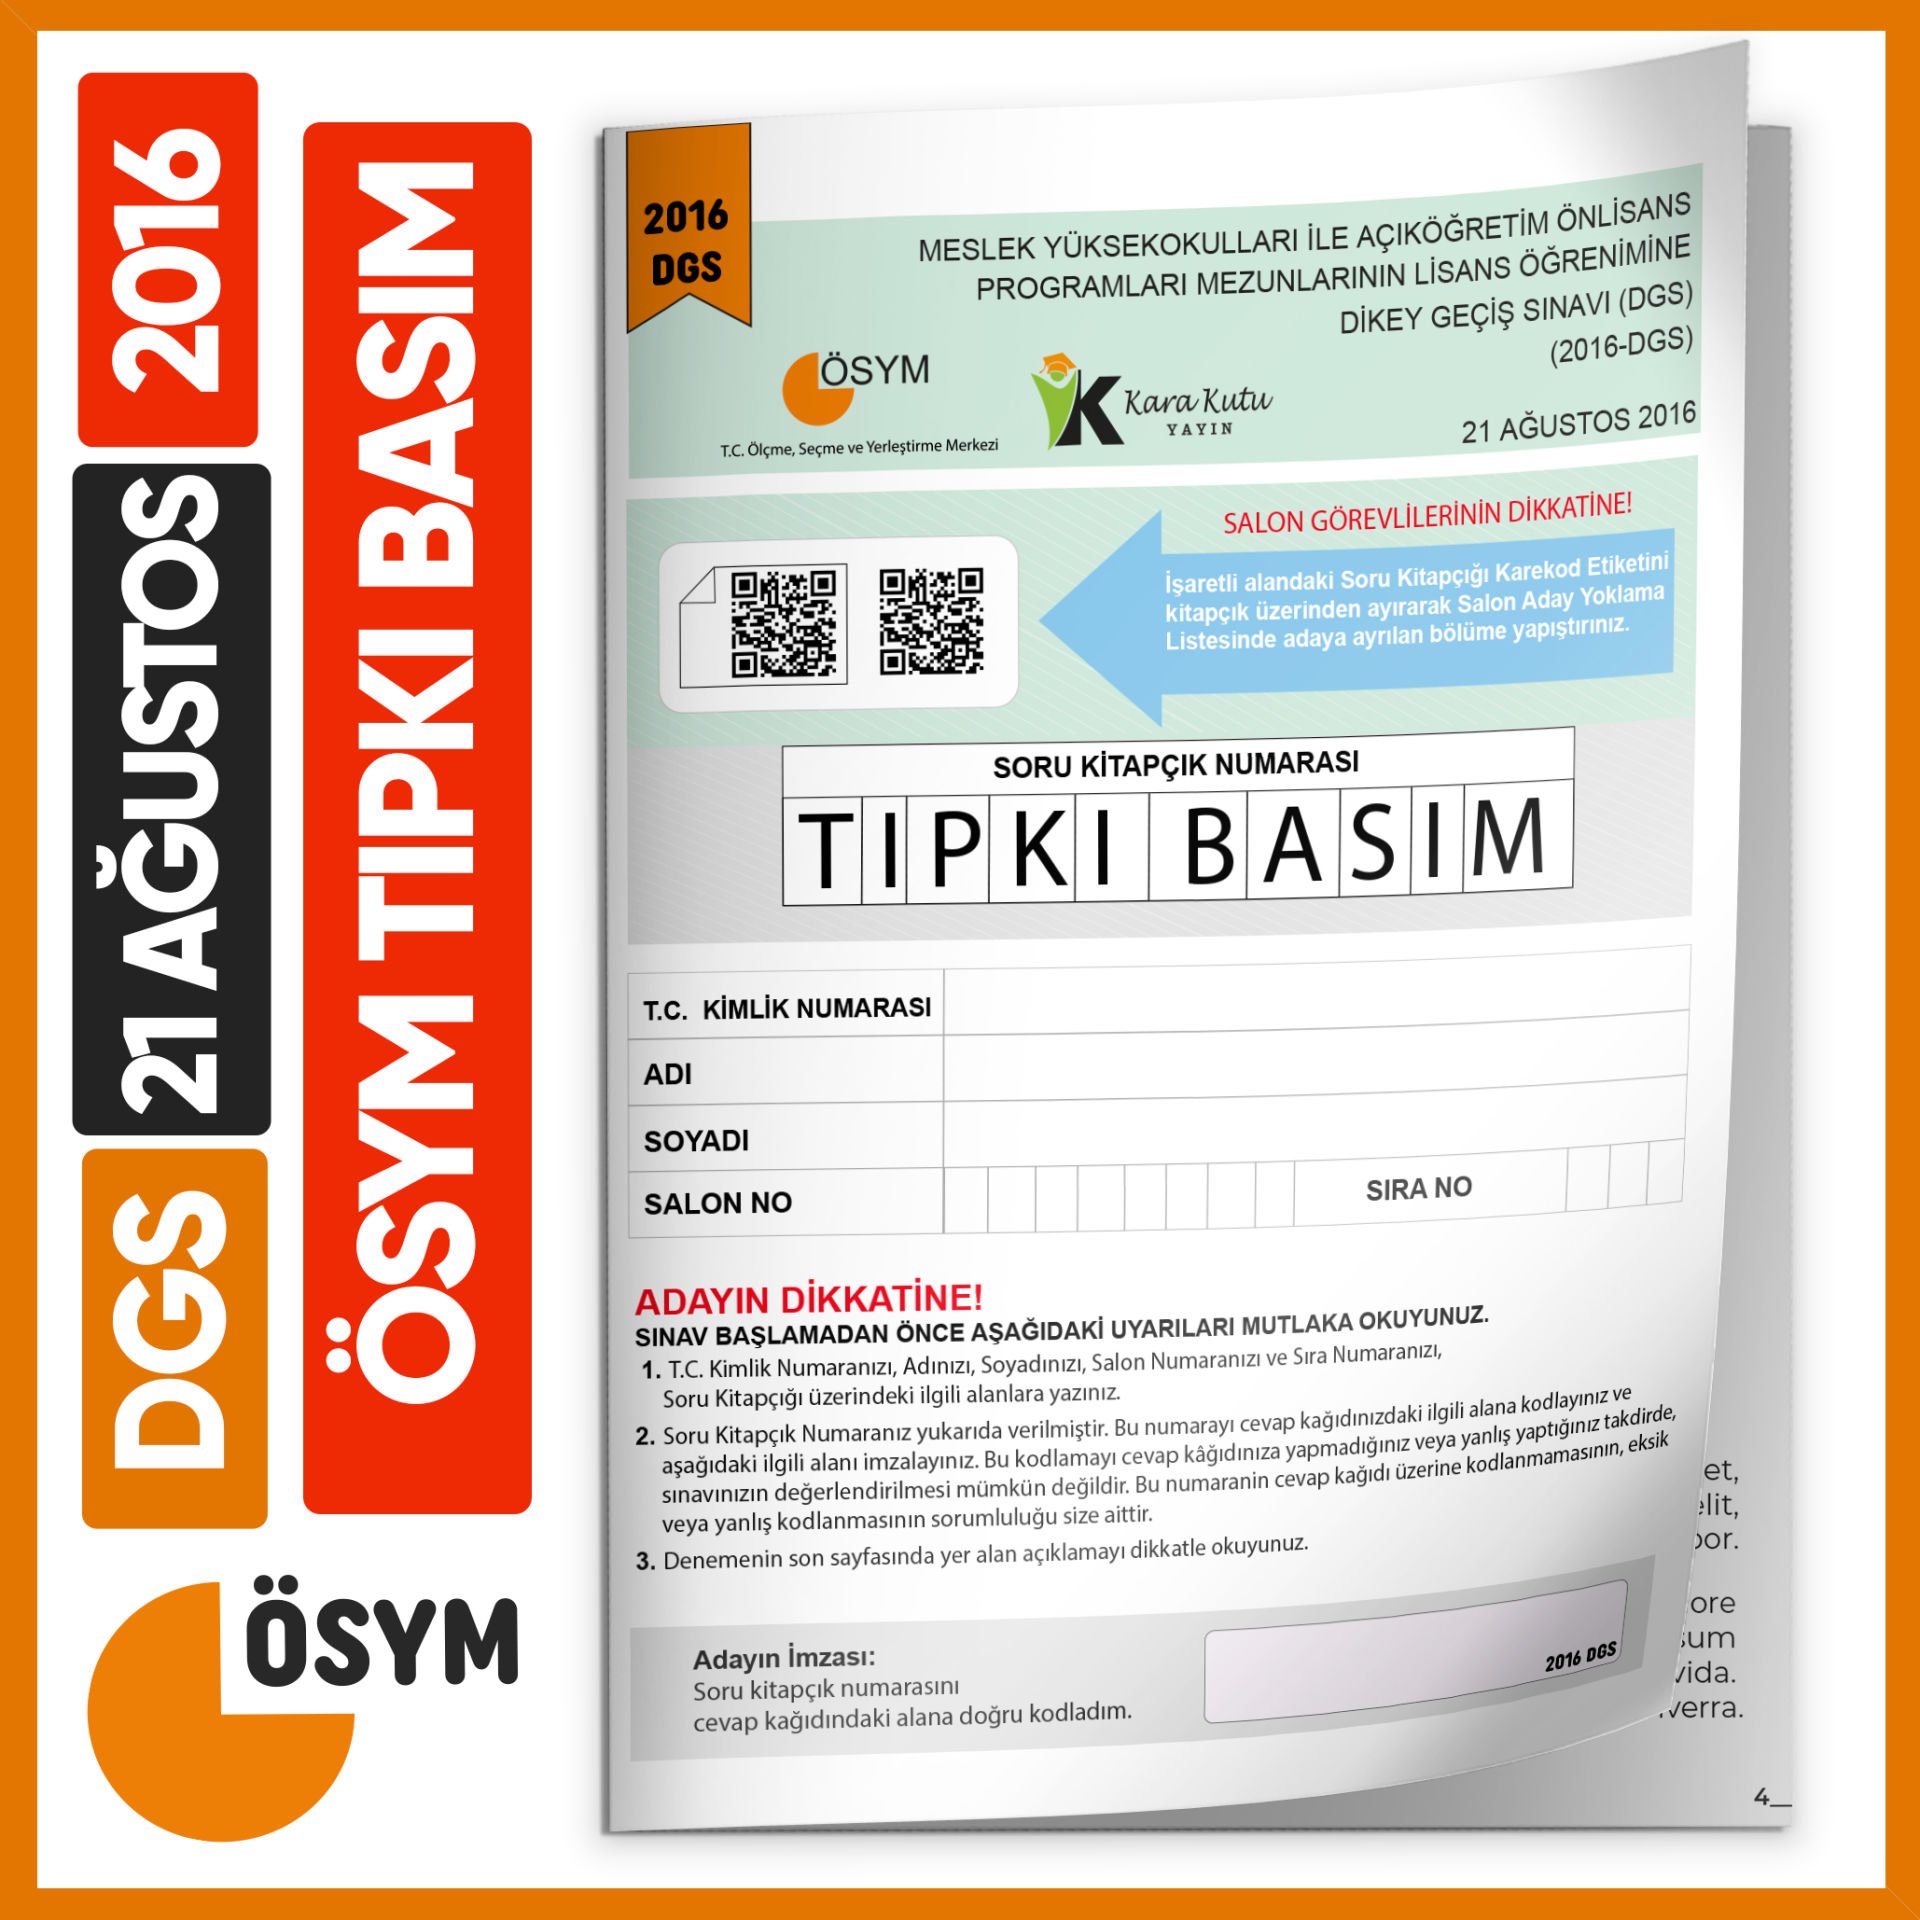 DGS 2016 ÖSYM Tıpkı Basım Çıkmış Soru Deneme Kitapçığı Yeni Baskı Türkiye Geneli Dijital Çözümlü